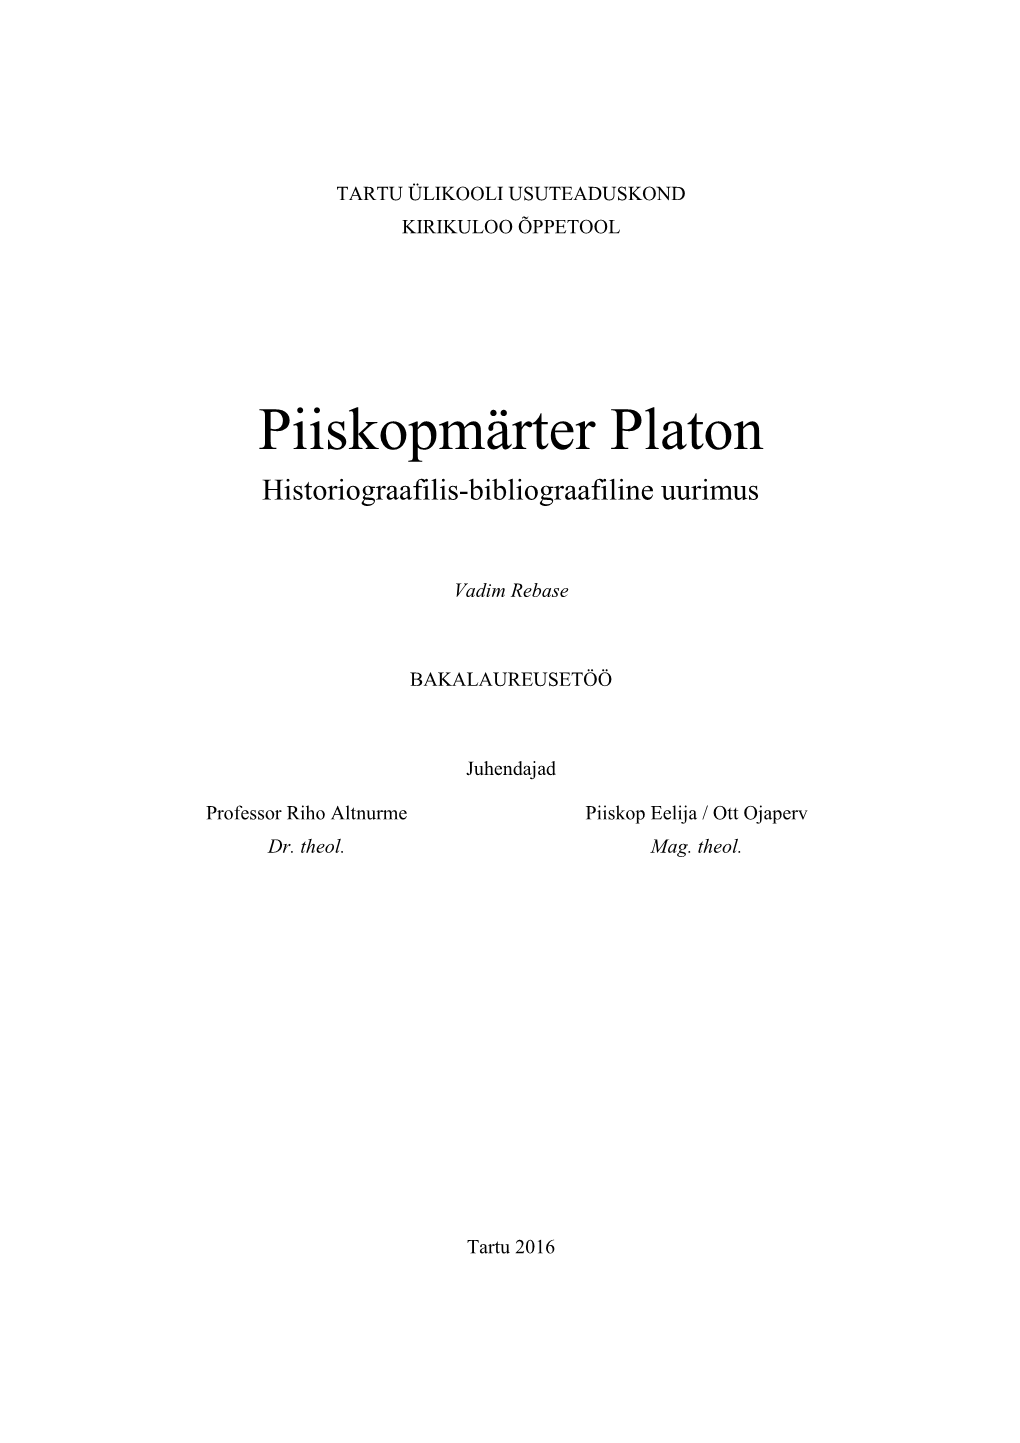 Piiskopmärter Platon Historiograafilis-Bibliograafiline Uurimus